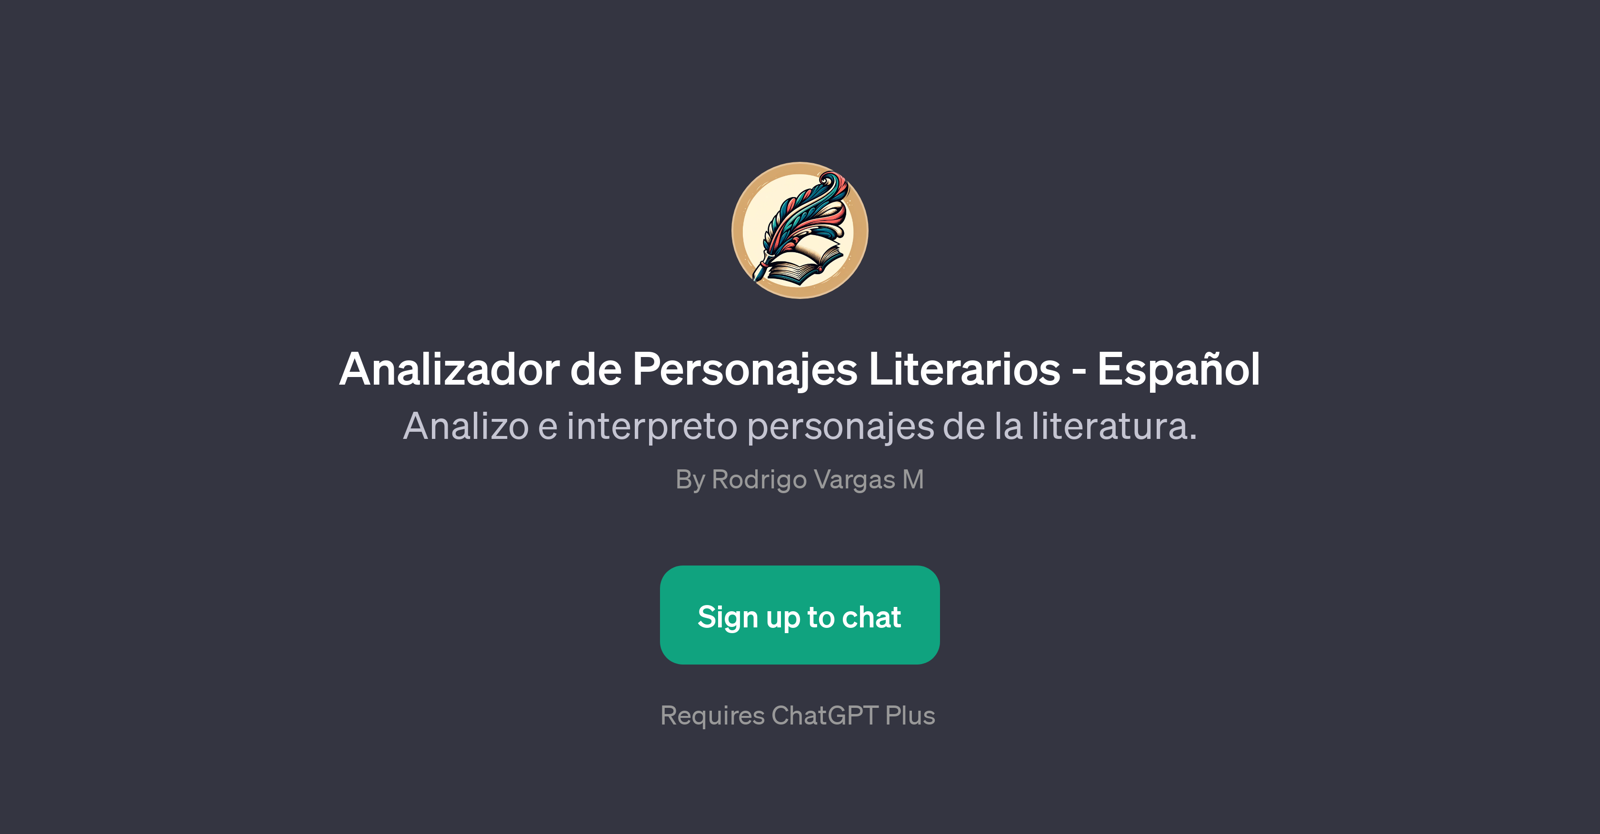 Analizador de Personajes Literarios - Espaol website